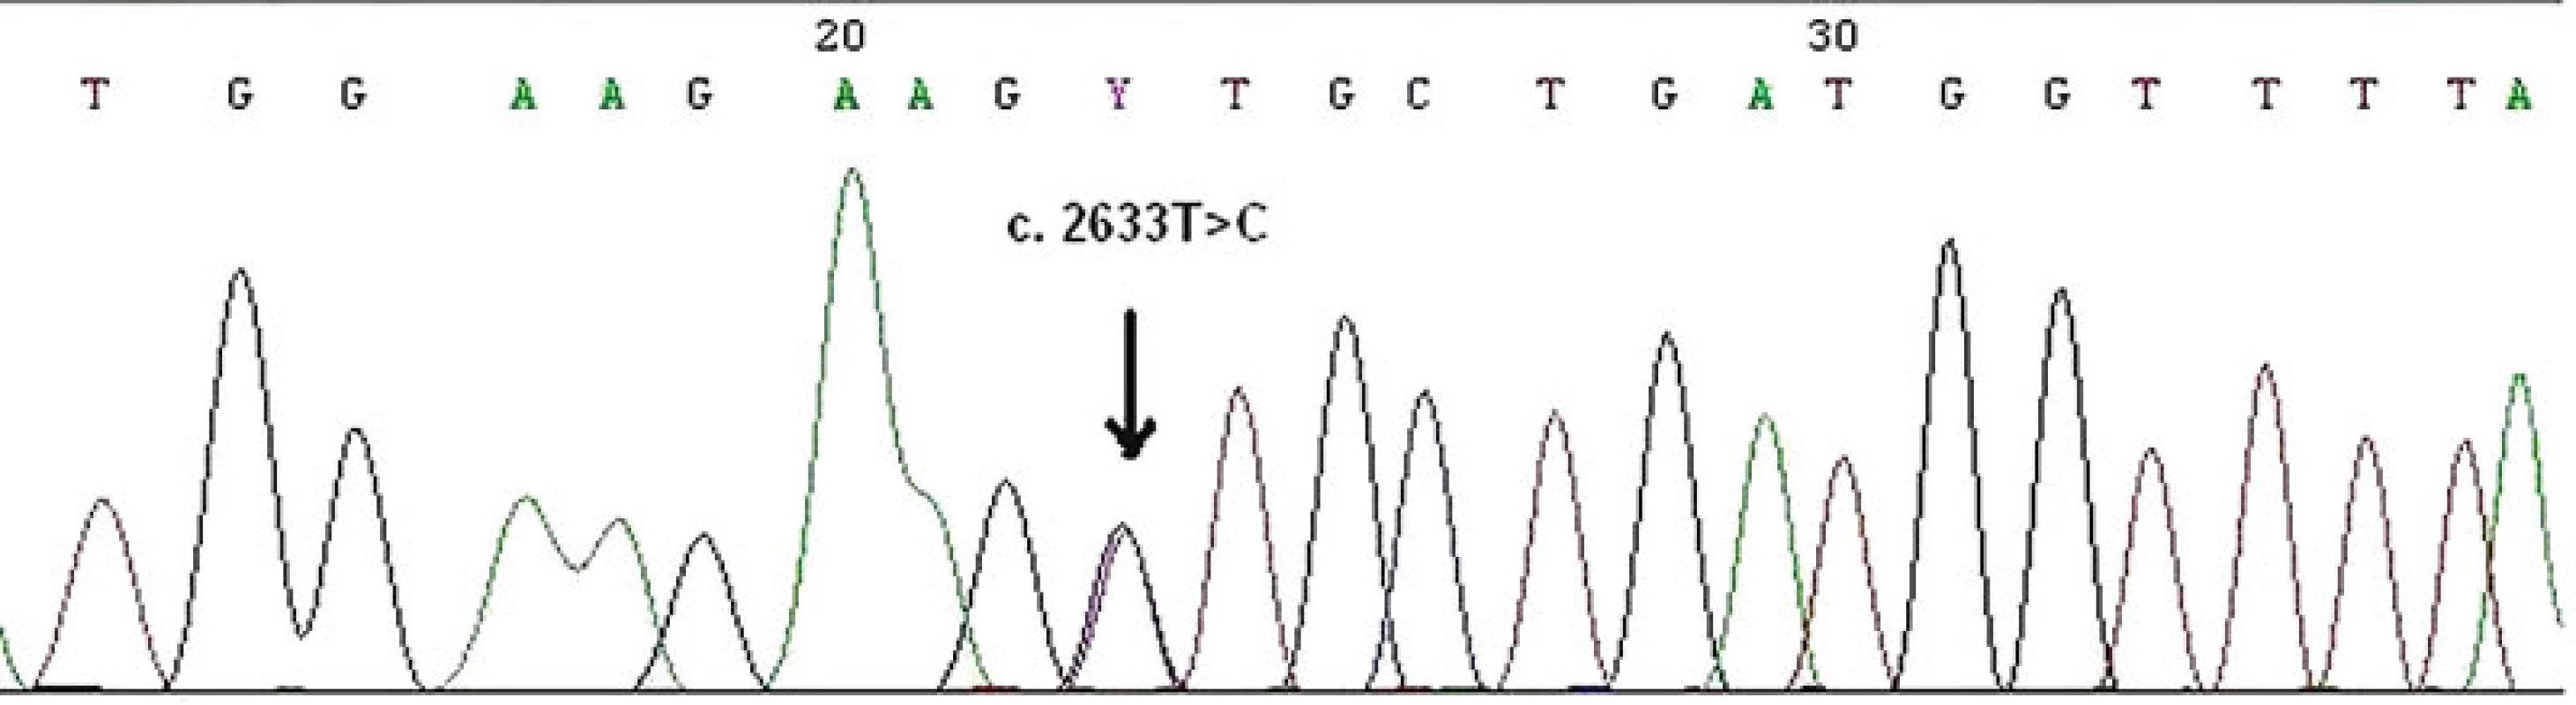 Zárodečná bodová mutace c.2633T&gt;C ve čtvrtém exonu MSH6 genu v periferních lymfocytech zjištěna metodou přímého sekvenování. Jde o tzv. missence mutace, kdy ve vznikajícím proteinu dochází k záměně aminokyseliny, a to valinu za alanin v kodonu 878.